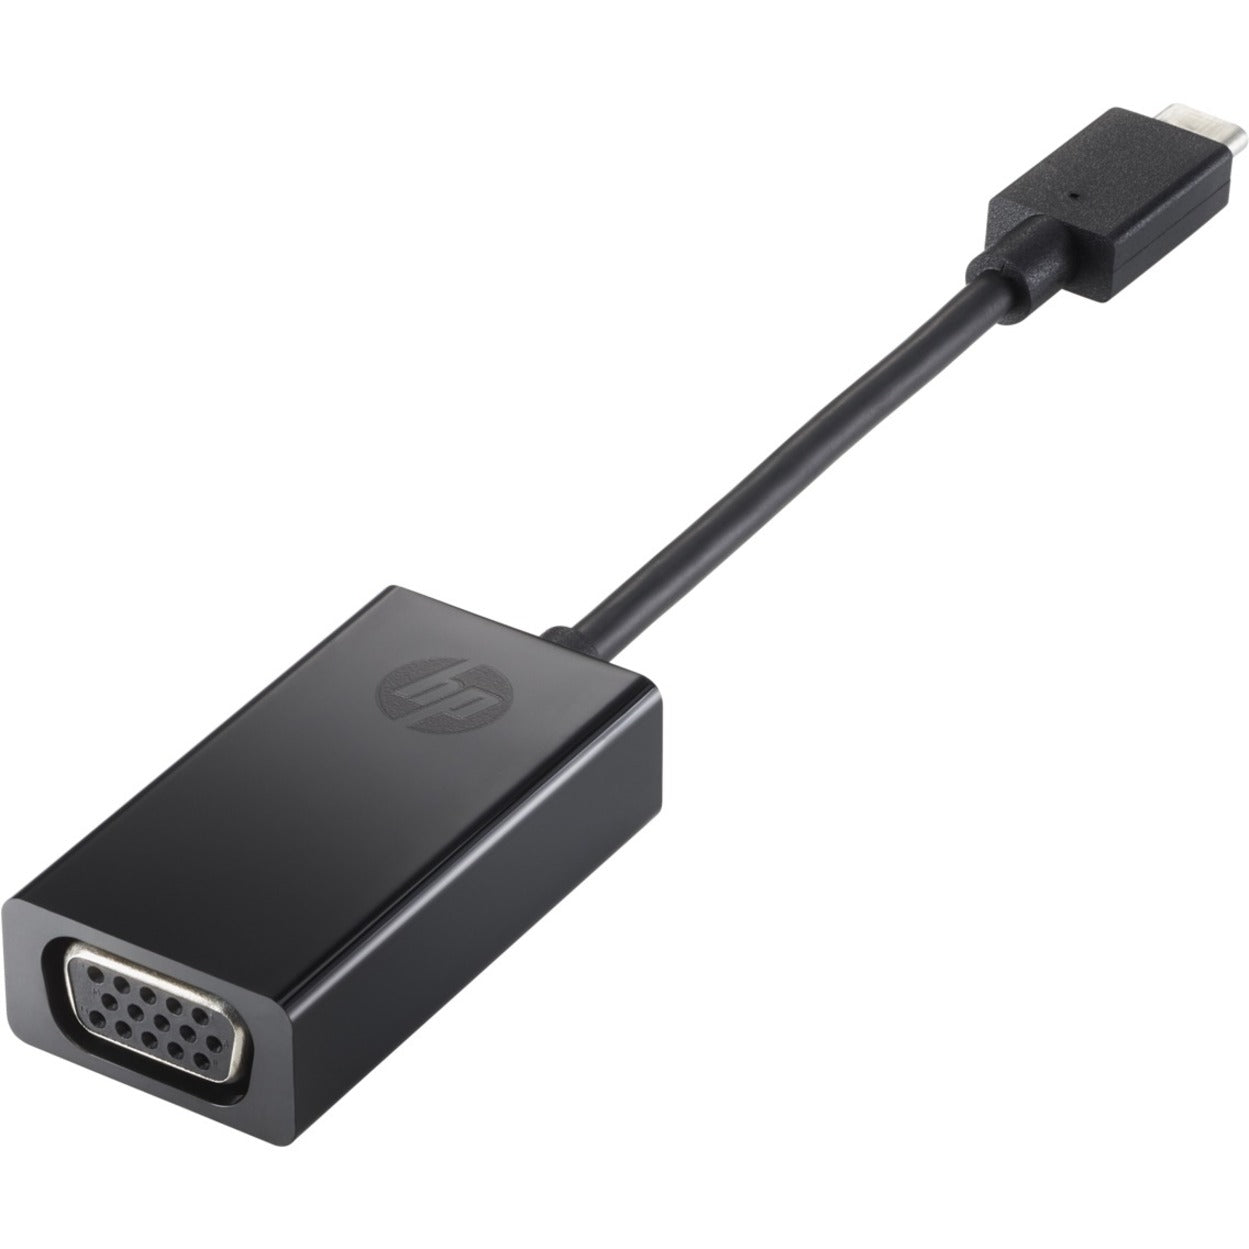 Adaptateur HP USB-C vers VGA Connectez votre appareil USB Type C à un écran VGA